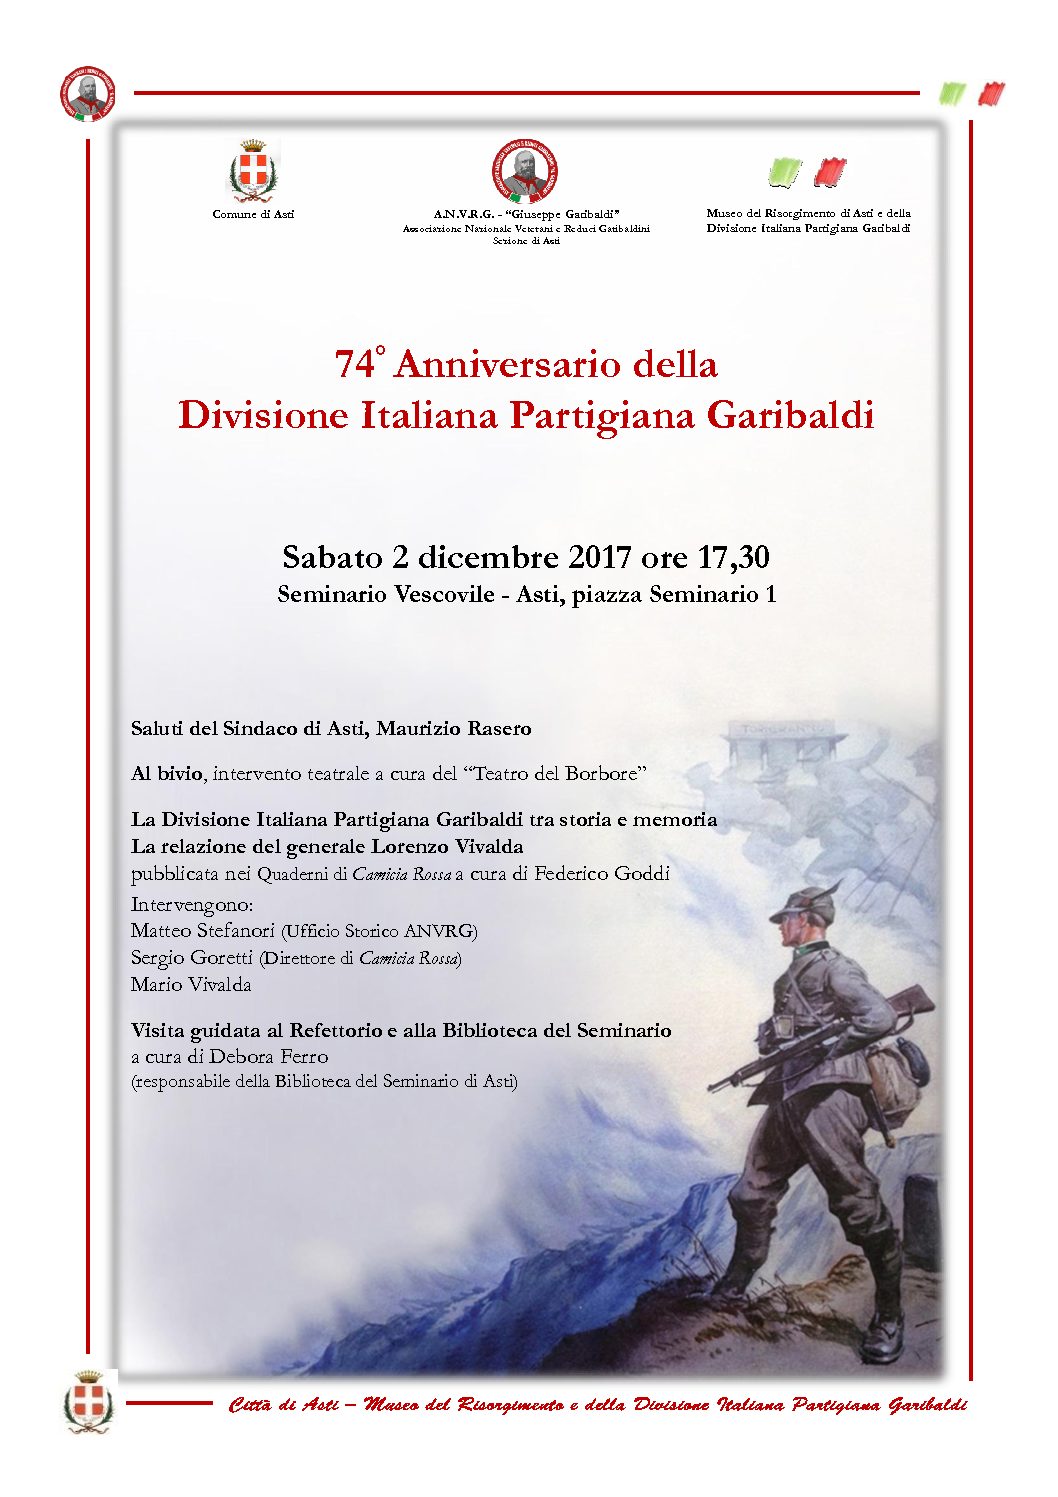 74° anniversario della Divisione "Garibaldi" - Presentazione ad Asti del diario del Gen. Vivalda